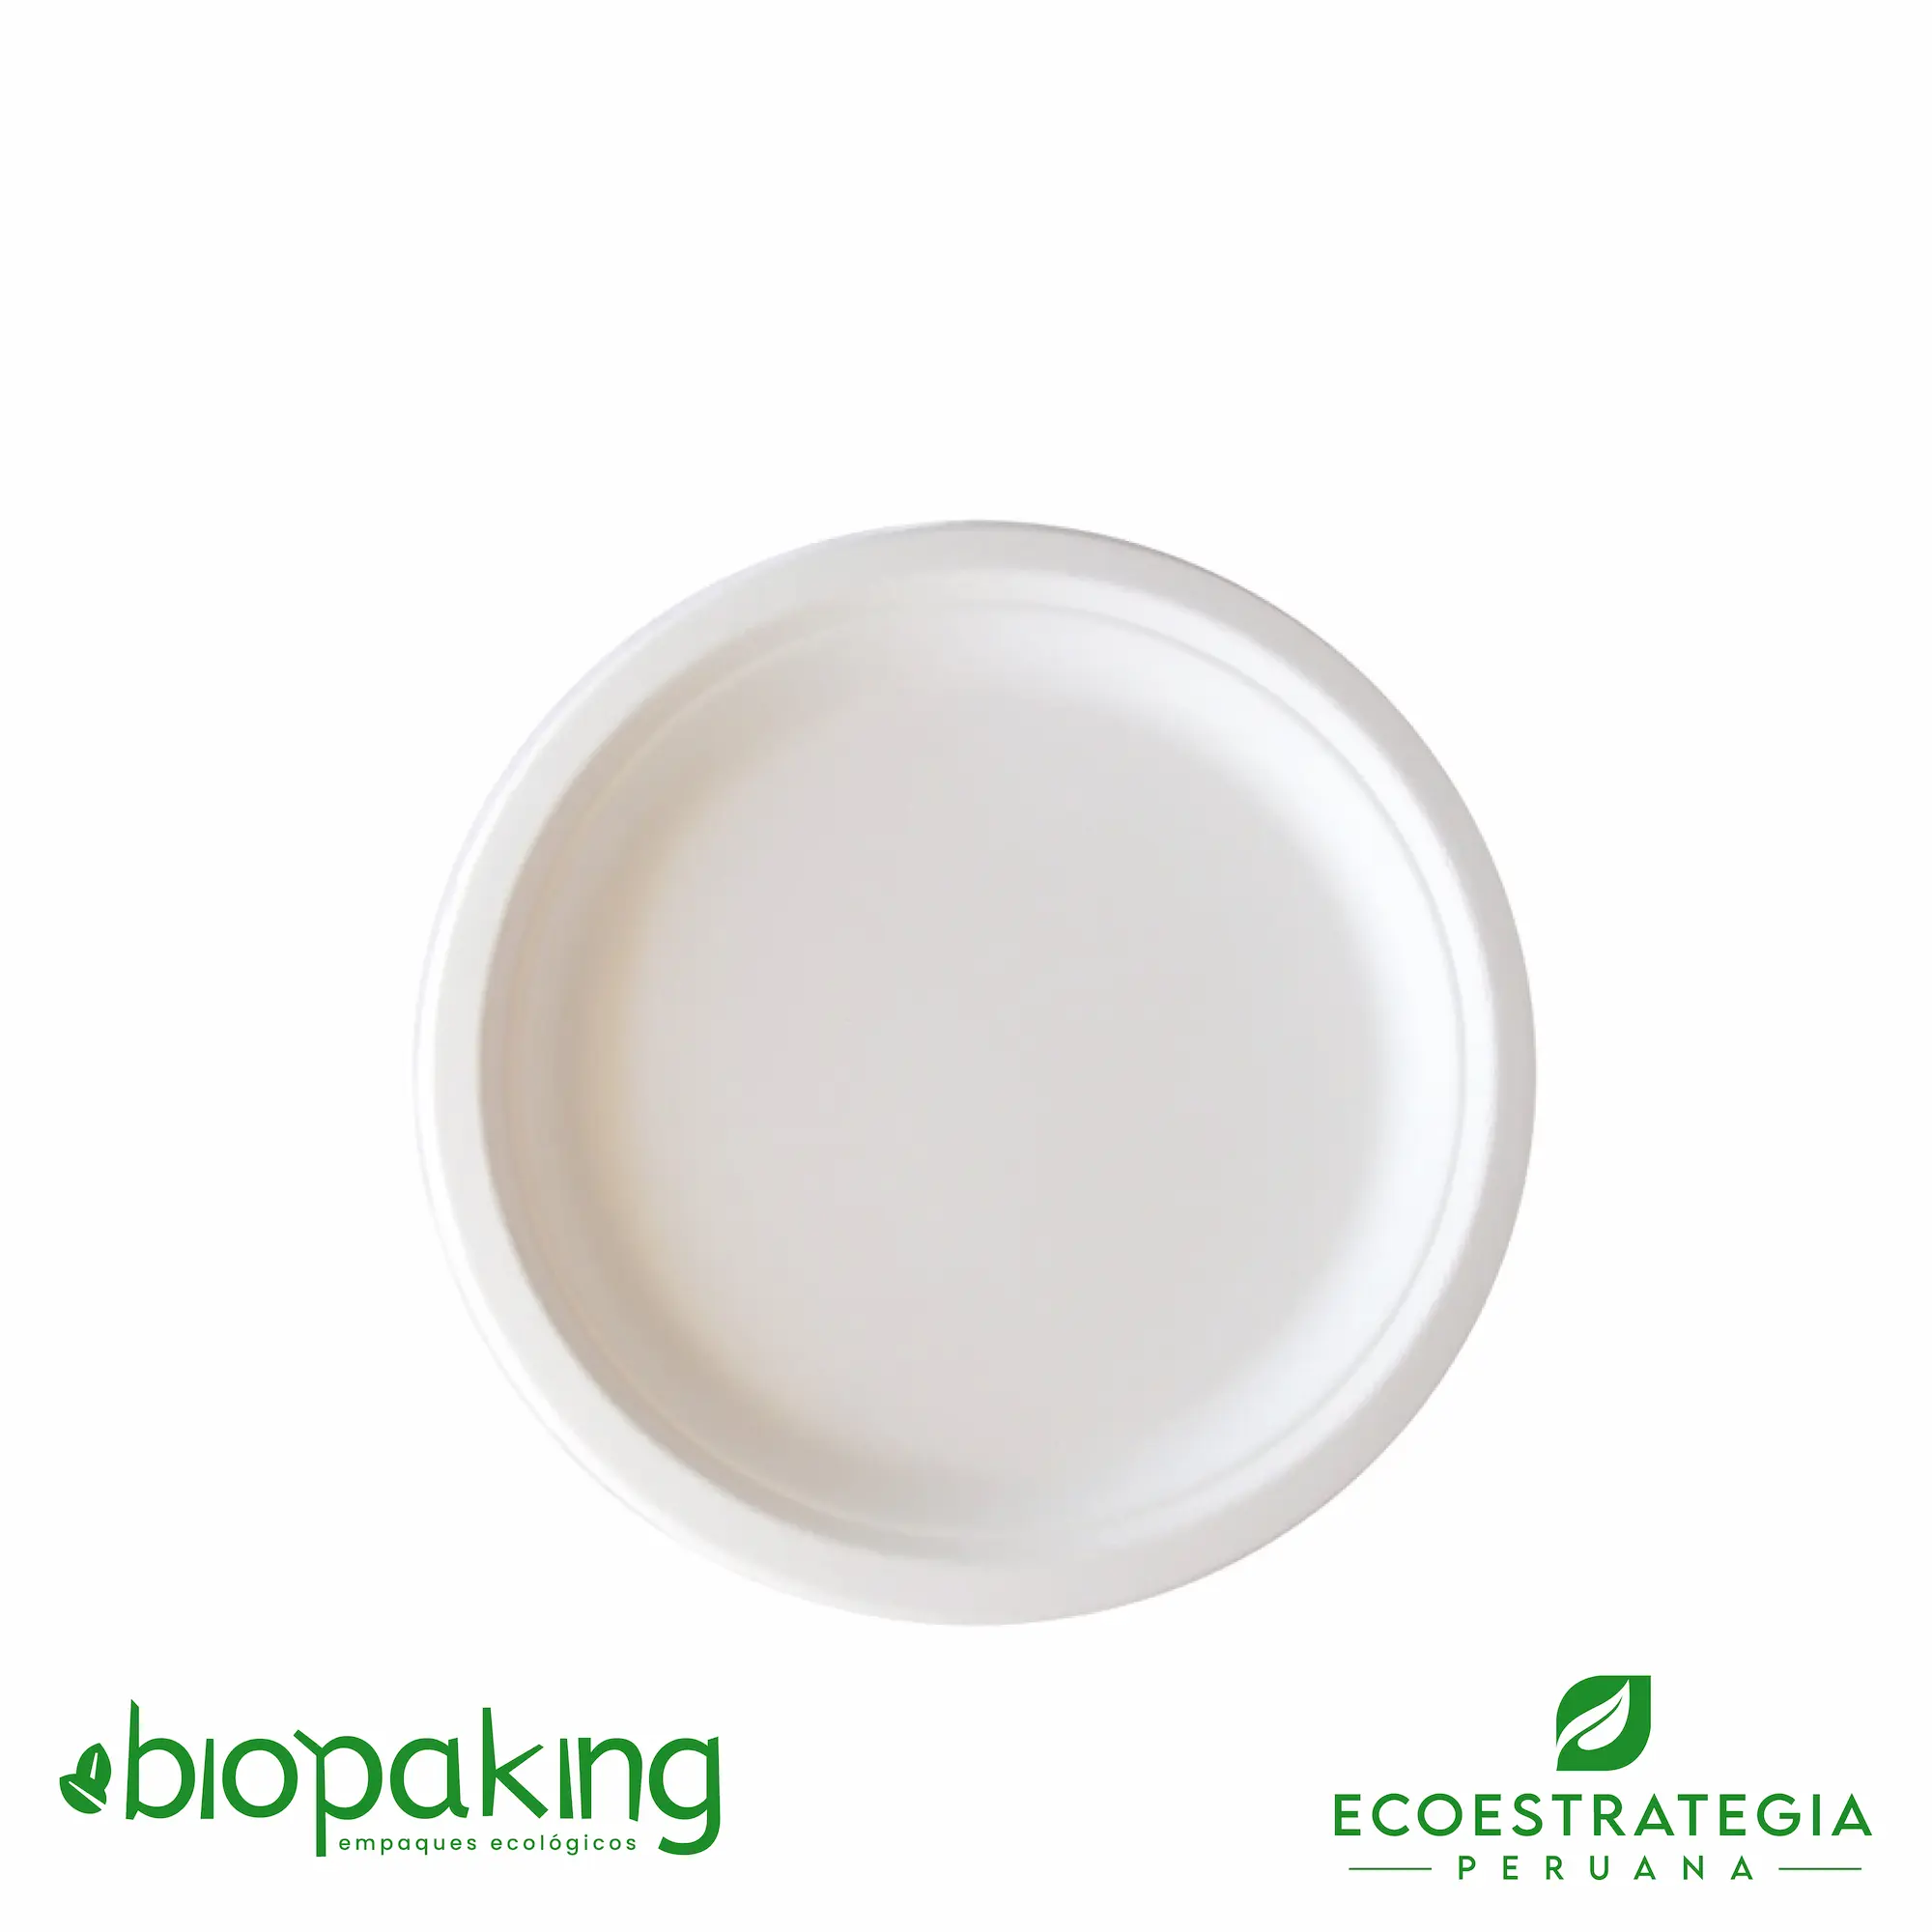 El plato biodegrable de 22cm ep22 es también conocido como plato biodegradable número 22, plato biodegradable fibra, plato #22 biodegradable, plato eco 22 fibra de caña, plato biodegradable redondo 9”, plato degustación biodegradable, plato de fondo 22 cm, platos biodegradables 22, plato redondo chico 9”, plato 22 biodegradable, plato nº 22 bagazo de caña, plato 22 fibra, plato 22 bioform fibra-ks bagazo caña, plato postre biodegradable, plato biodegradable precio, platos biodegradable caseros, platos biodegradables al por mayor, platos biodegradables makro, platos biodegradables plaza vea, importadores de platos biodegradables 22, distribuidores de platos biodegradables 22, mayoristas de platos biodegradables 22.